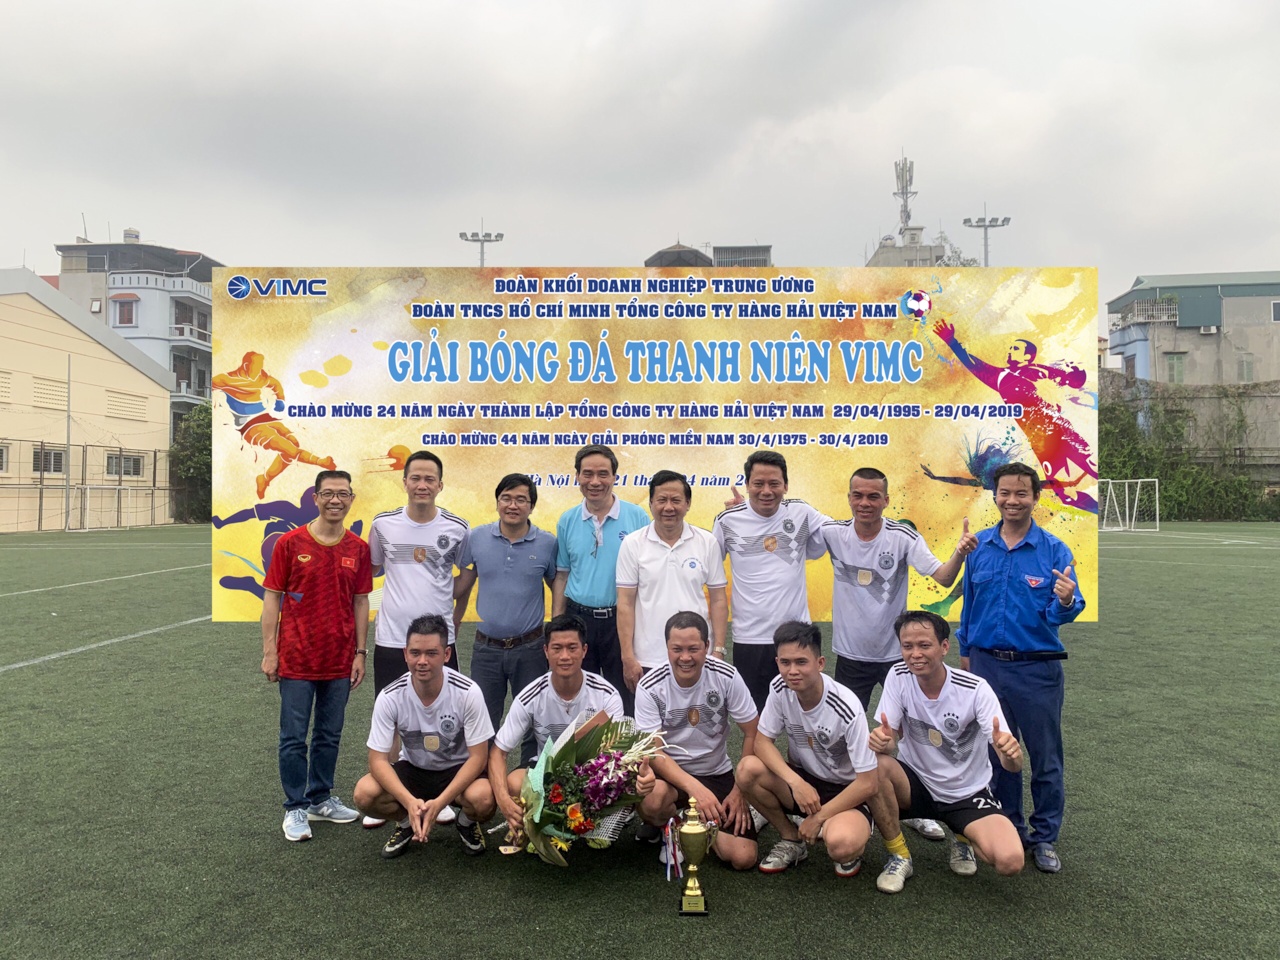 Giao lưu bóng đá chào mừng 24 năm Thành lập Tổng Công ty Hàng hải Việt Nam